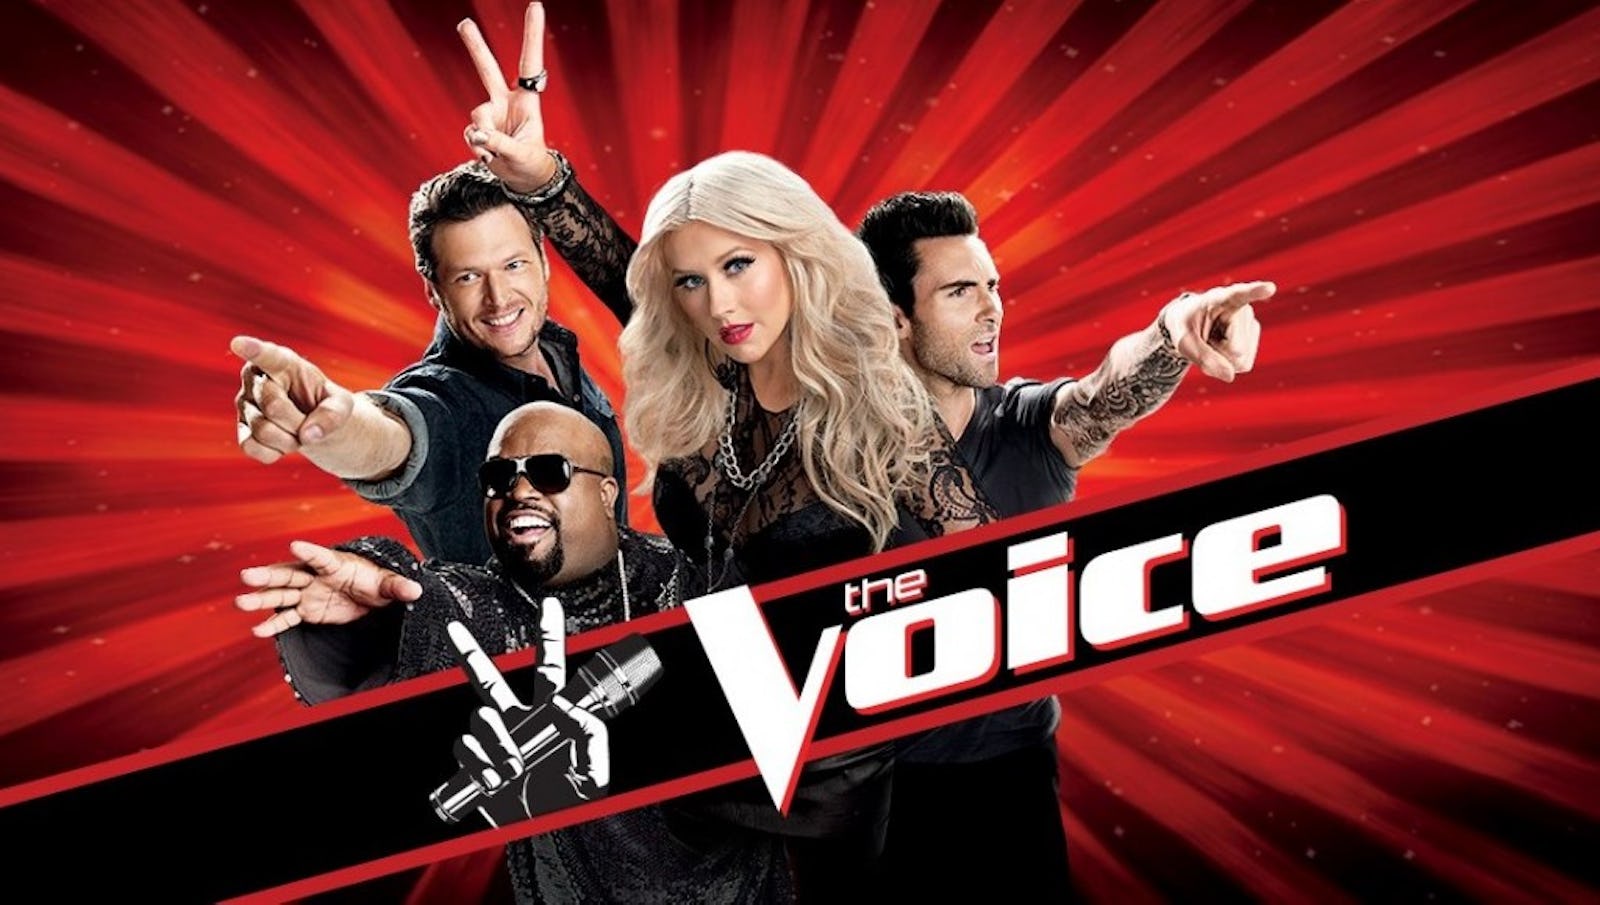 Voice. The Voices. Voice TV. The Voice заставка. Voice show.